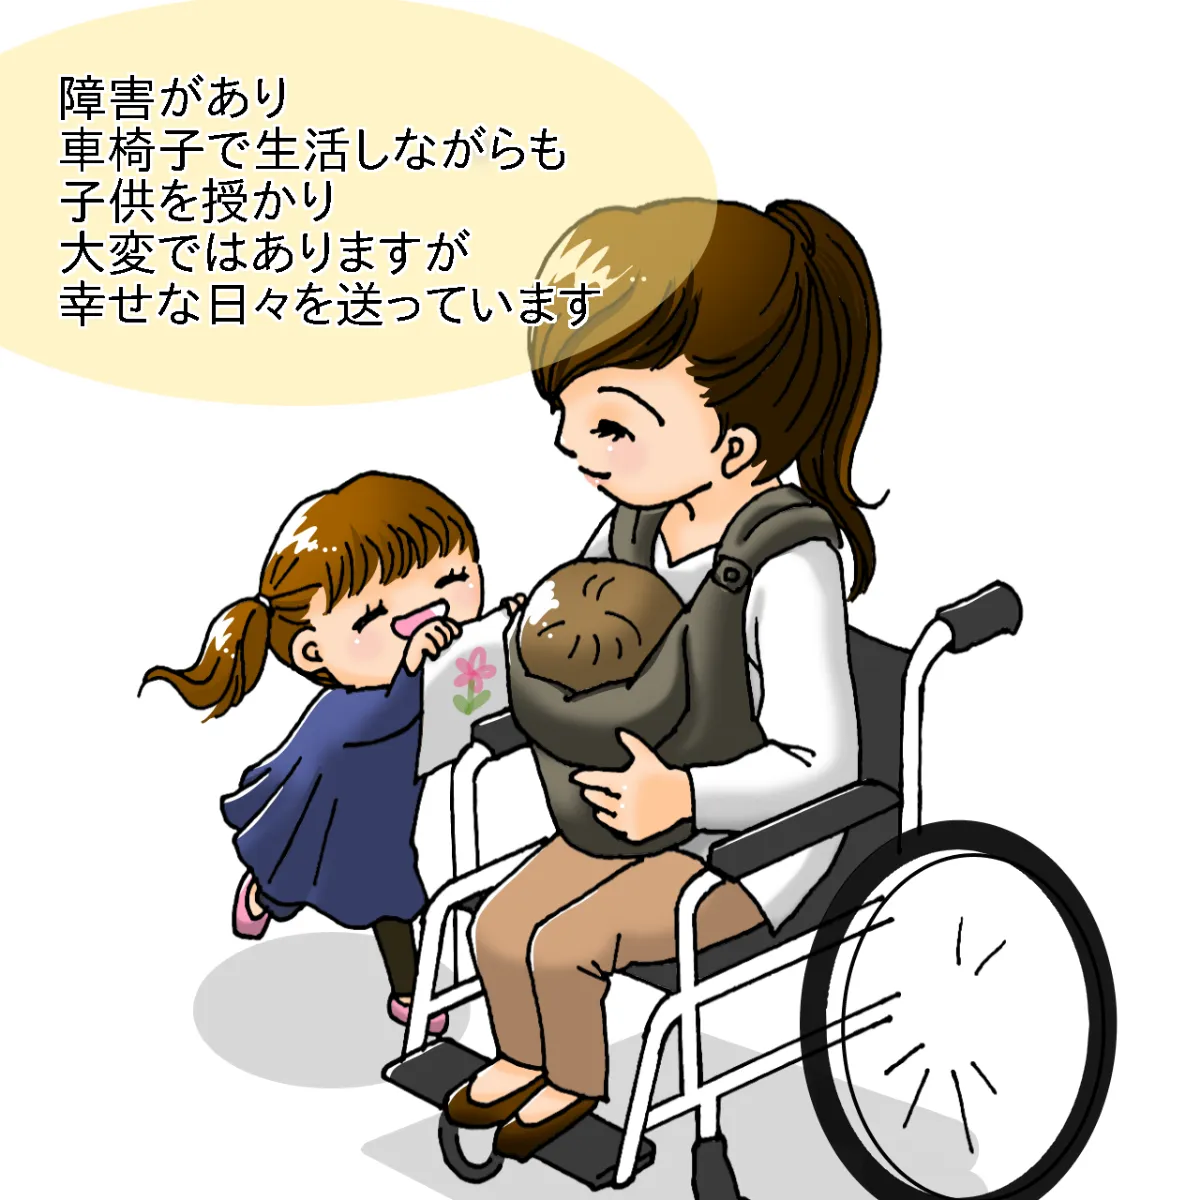 障害があり車椅子で生活しながらも子供を授かり大変ではありますが幸せな日々を送っています